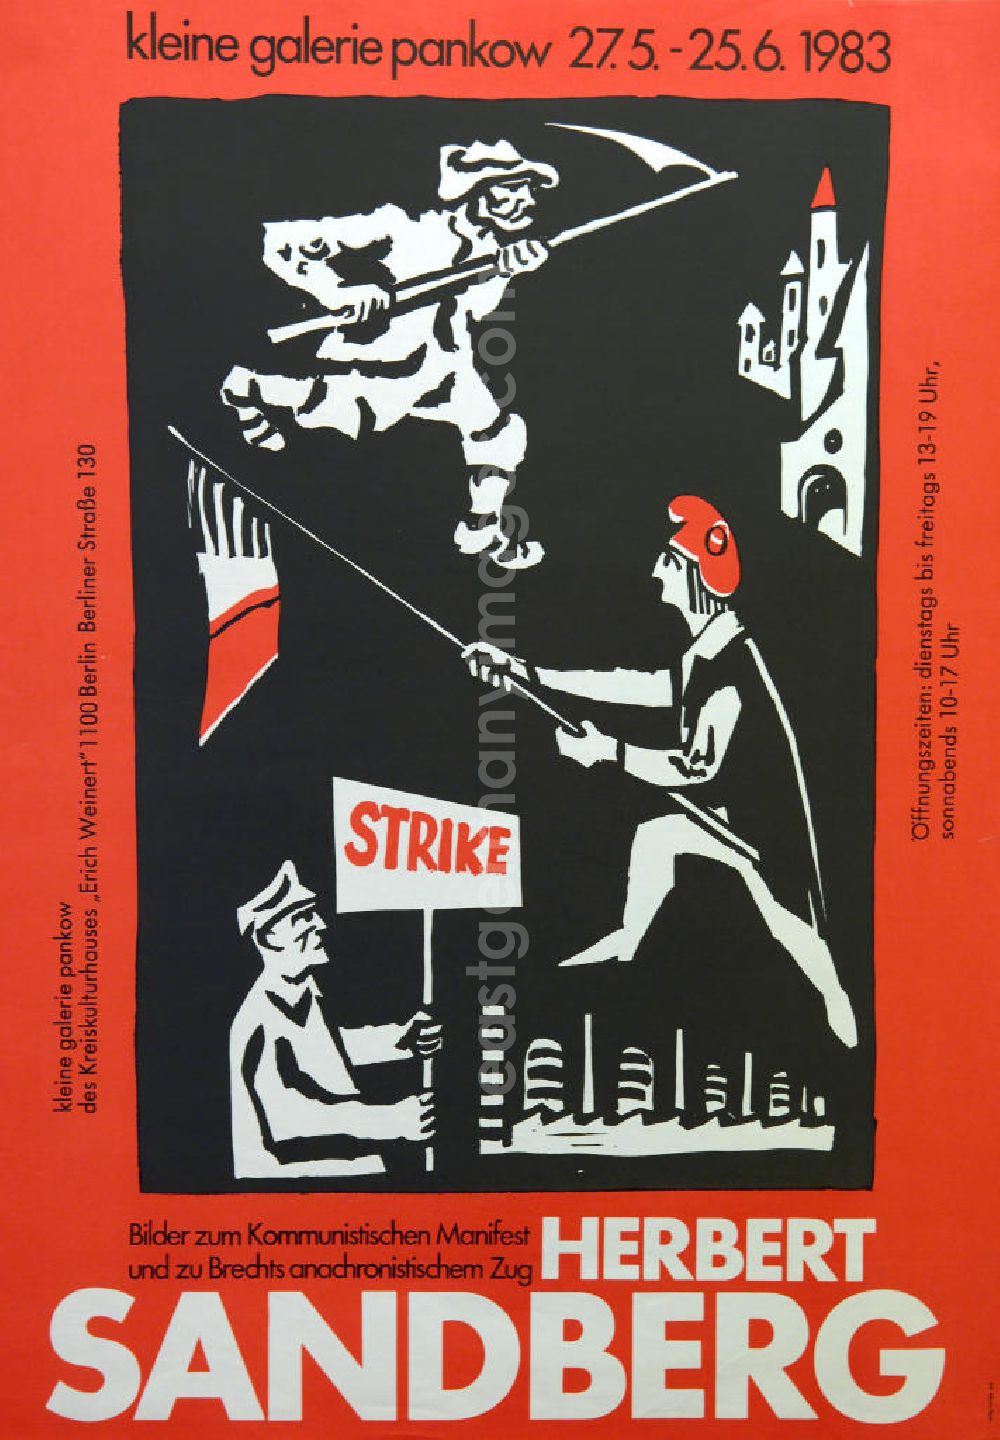 Berlin: Plakat der Ausstellung Herbert Sandberg, Bilder zum kommunistischen Manifest und zu Brechts anachronistischen Zug vom 27.5.-25.6.1983 Kleine Galerie Pankow, 4